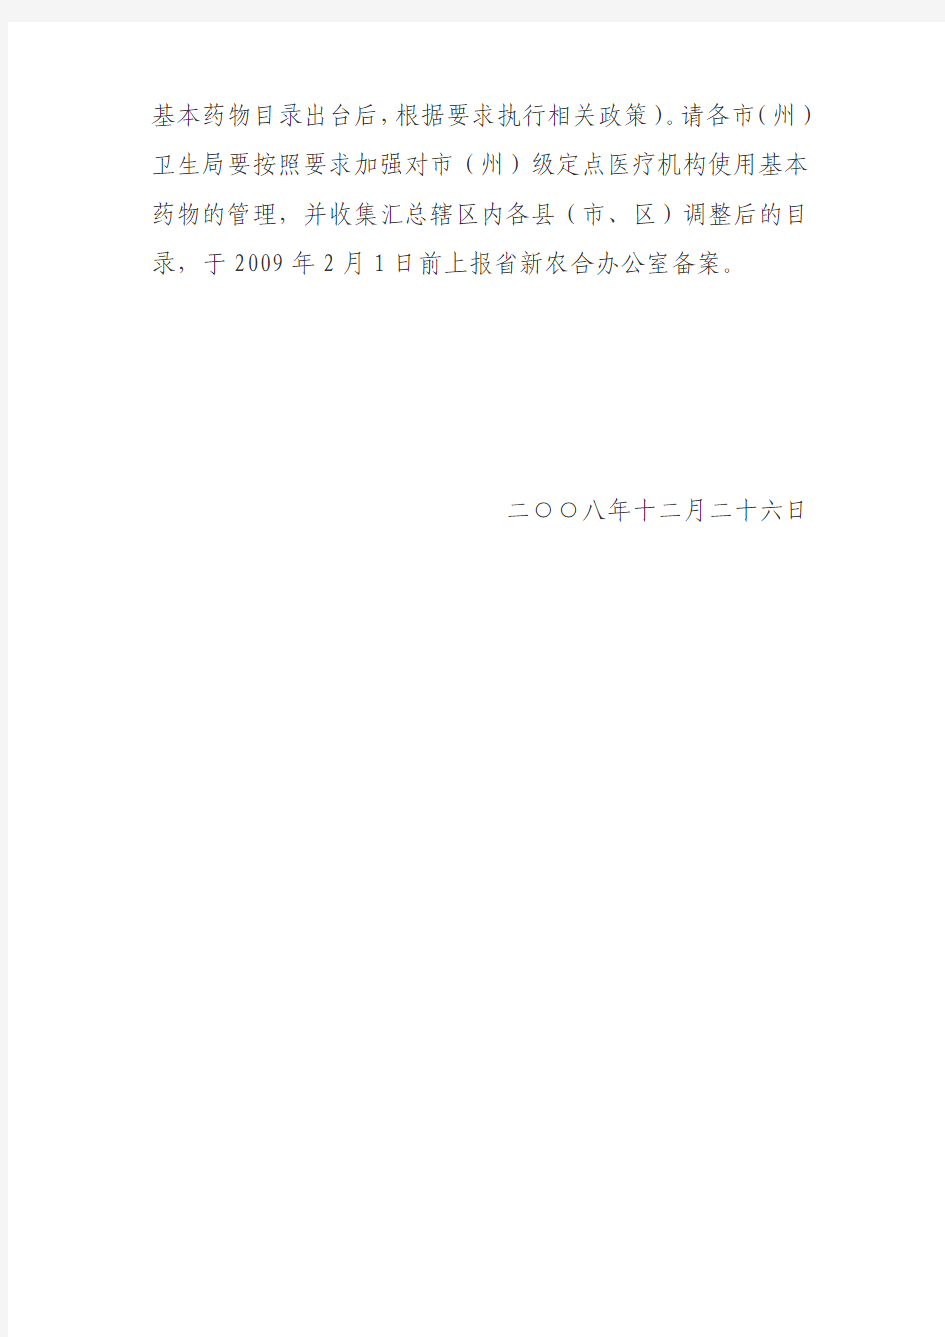 湖北省新型农村合作医疗基本药物目录(省、市州级)